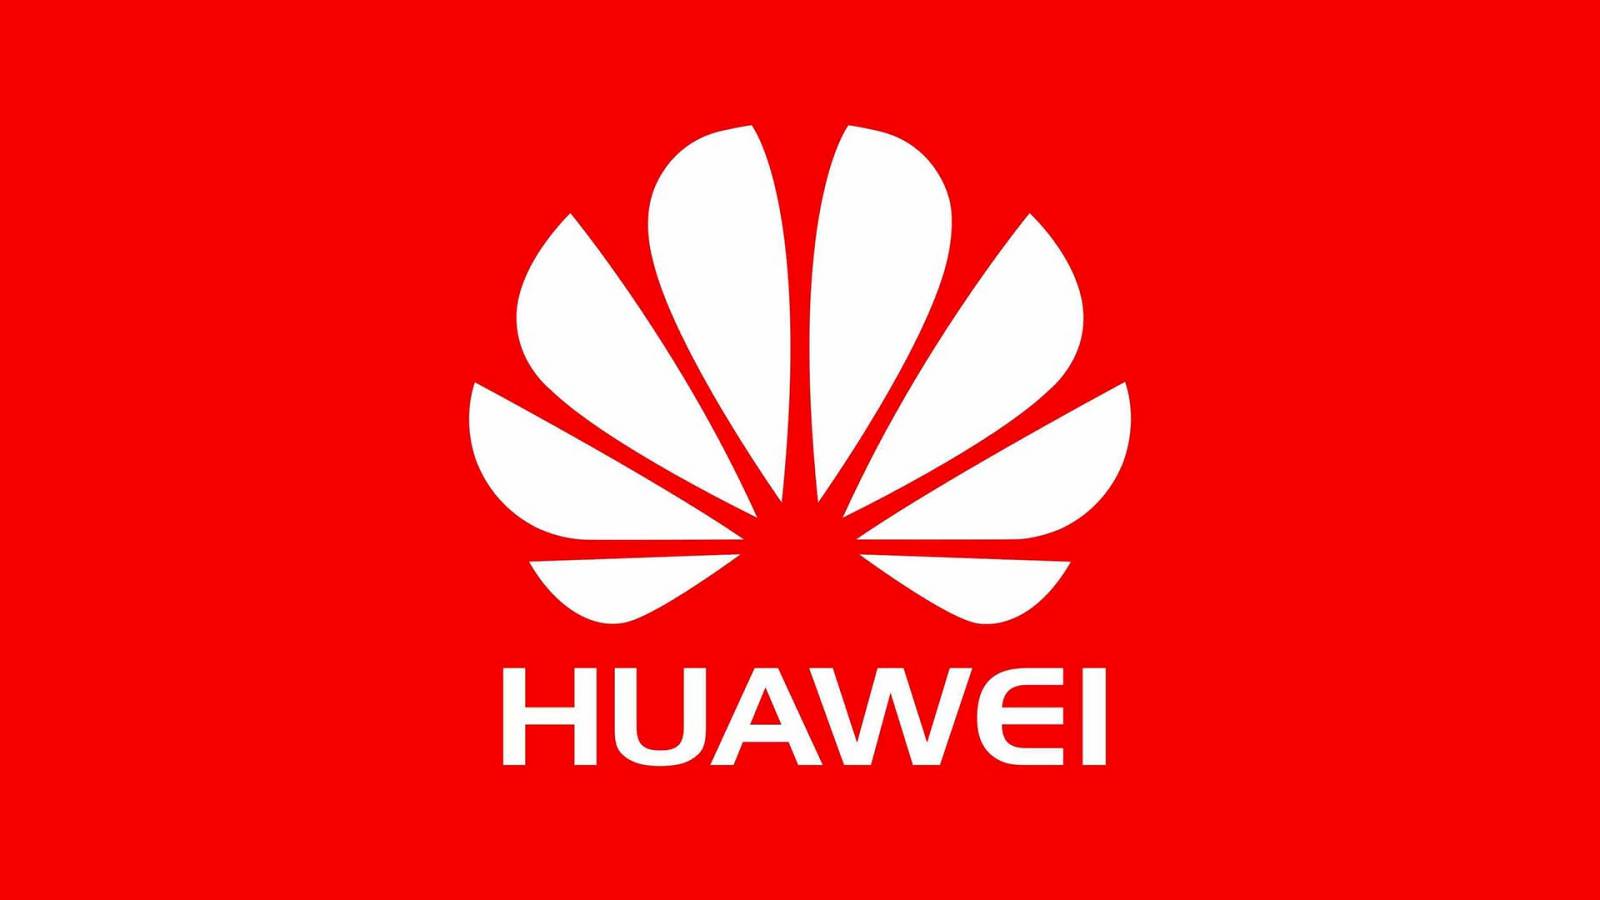 Huawei maatregelen